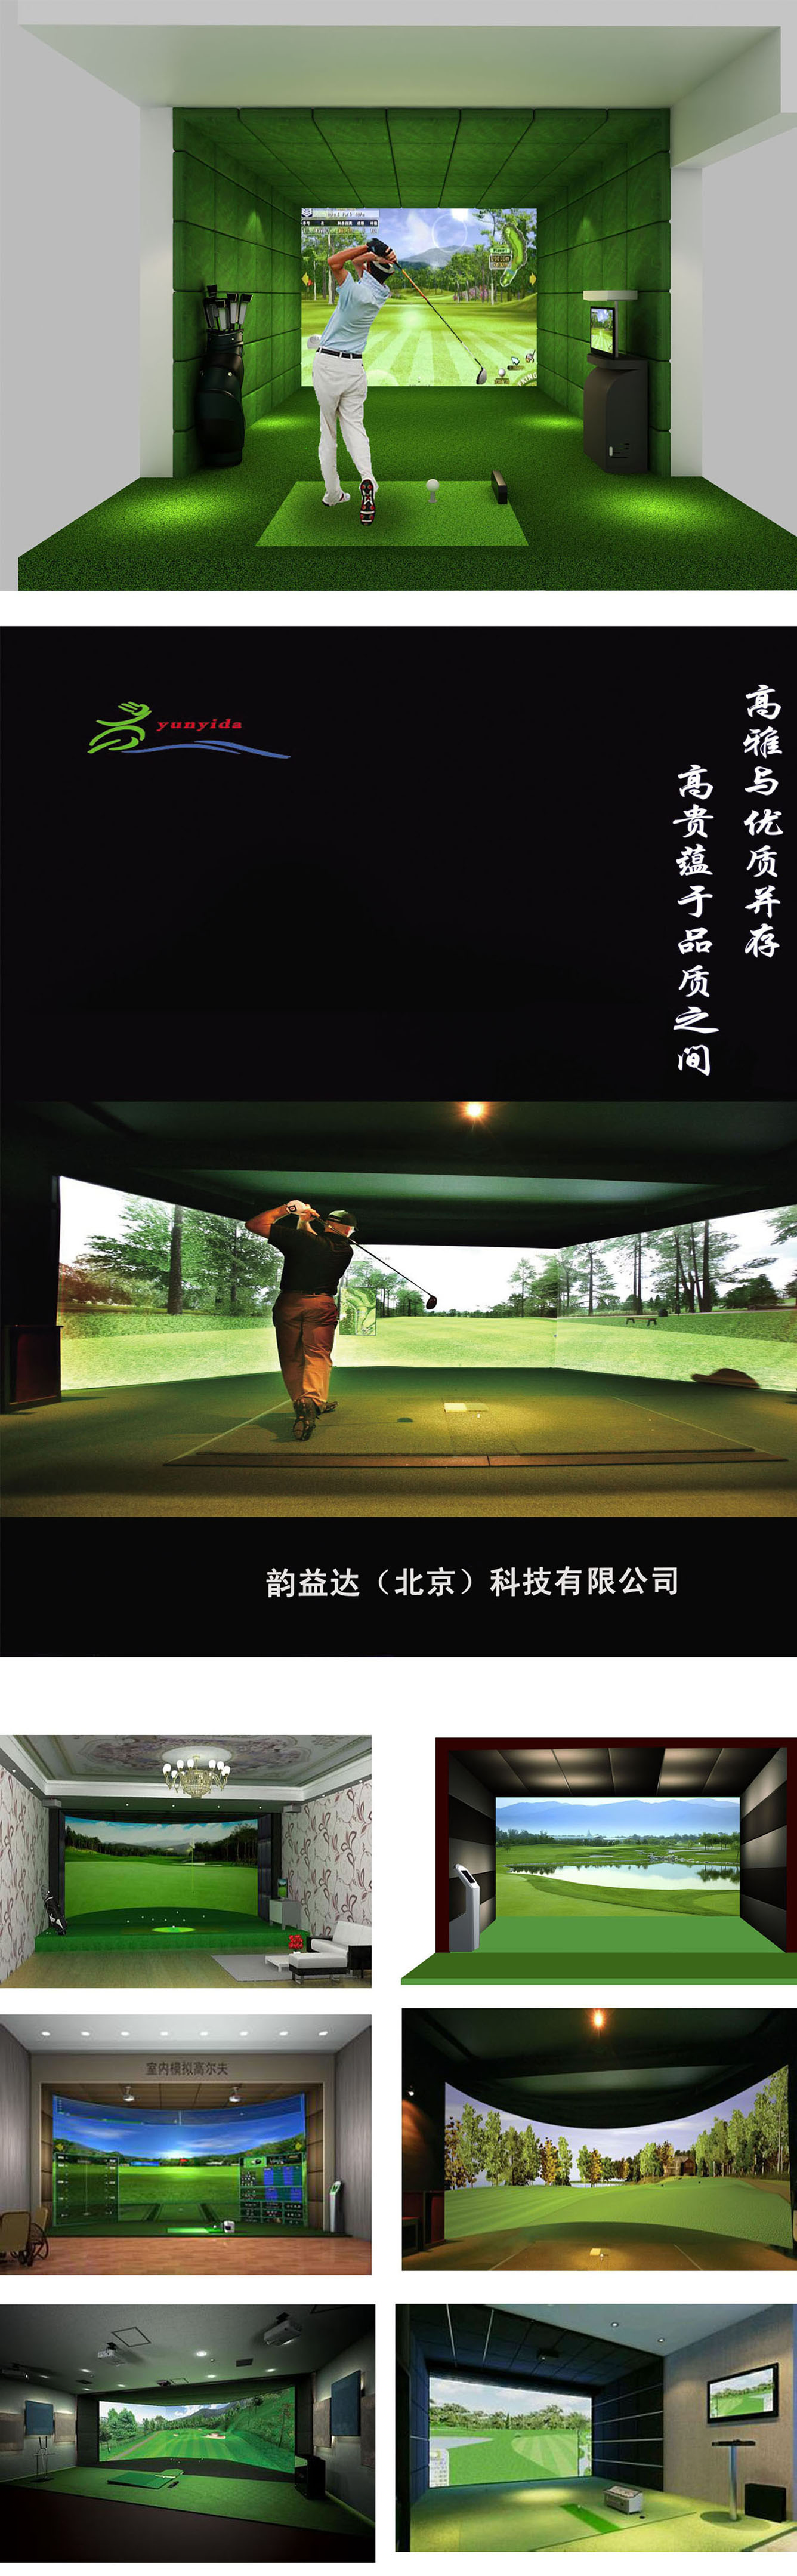 室内高尔夫软件51.jpg